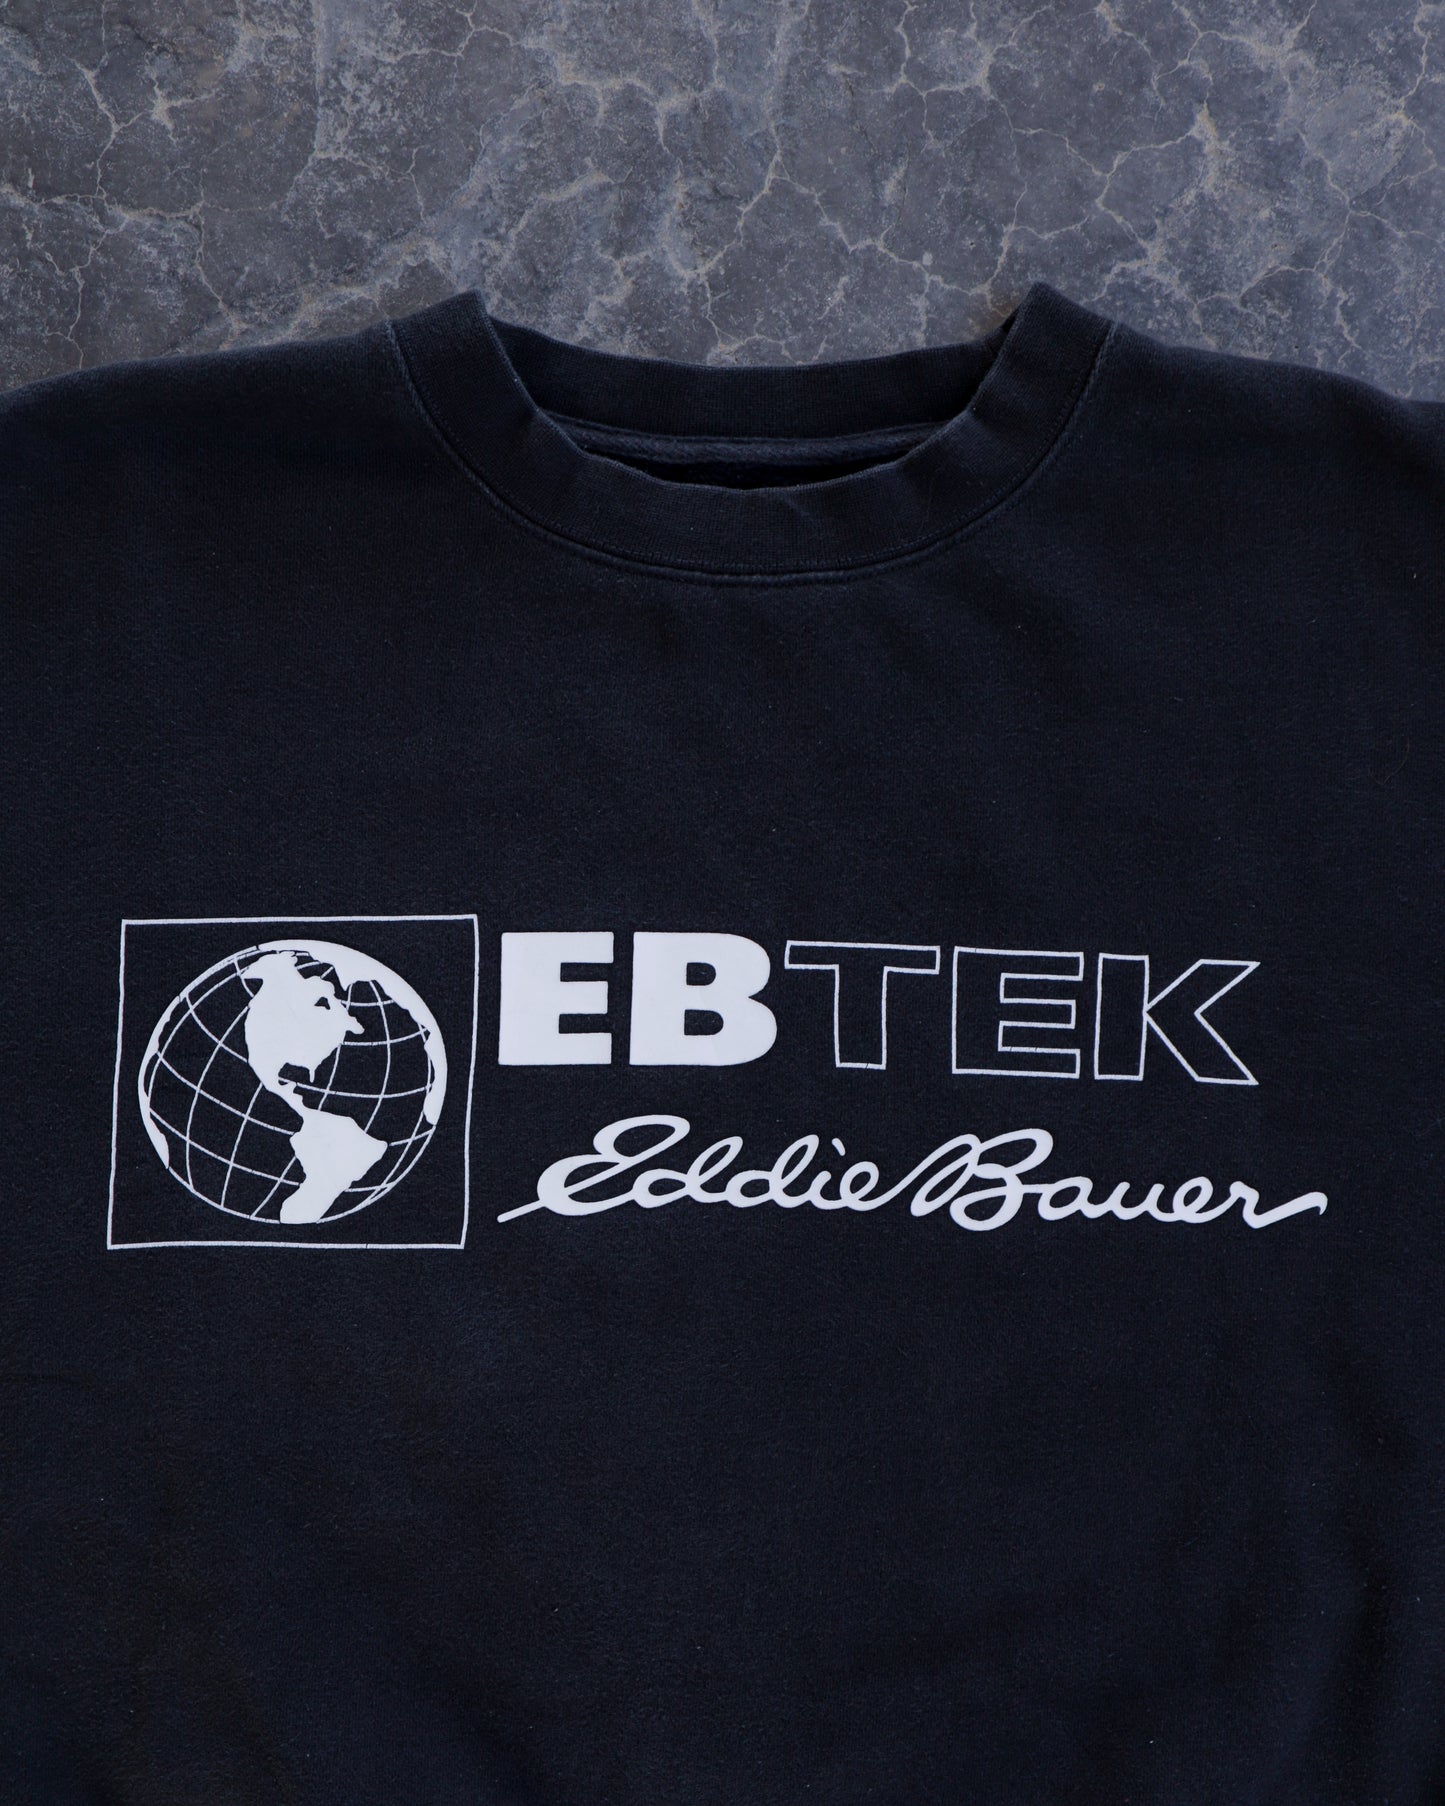 00s Eddie Bauer Ebtek Expedition Black Crewneck Sweatshirt - XL